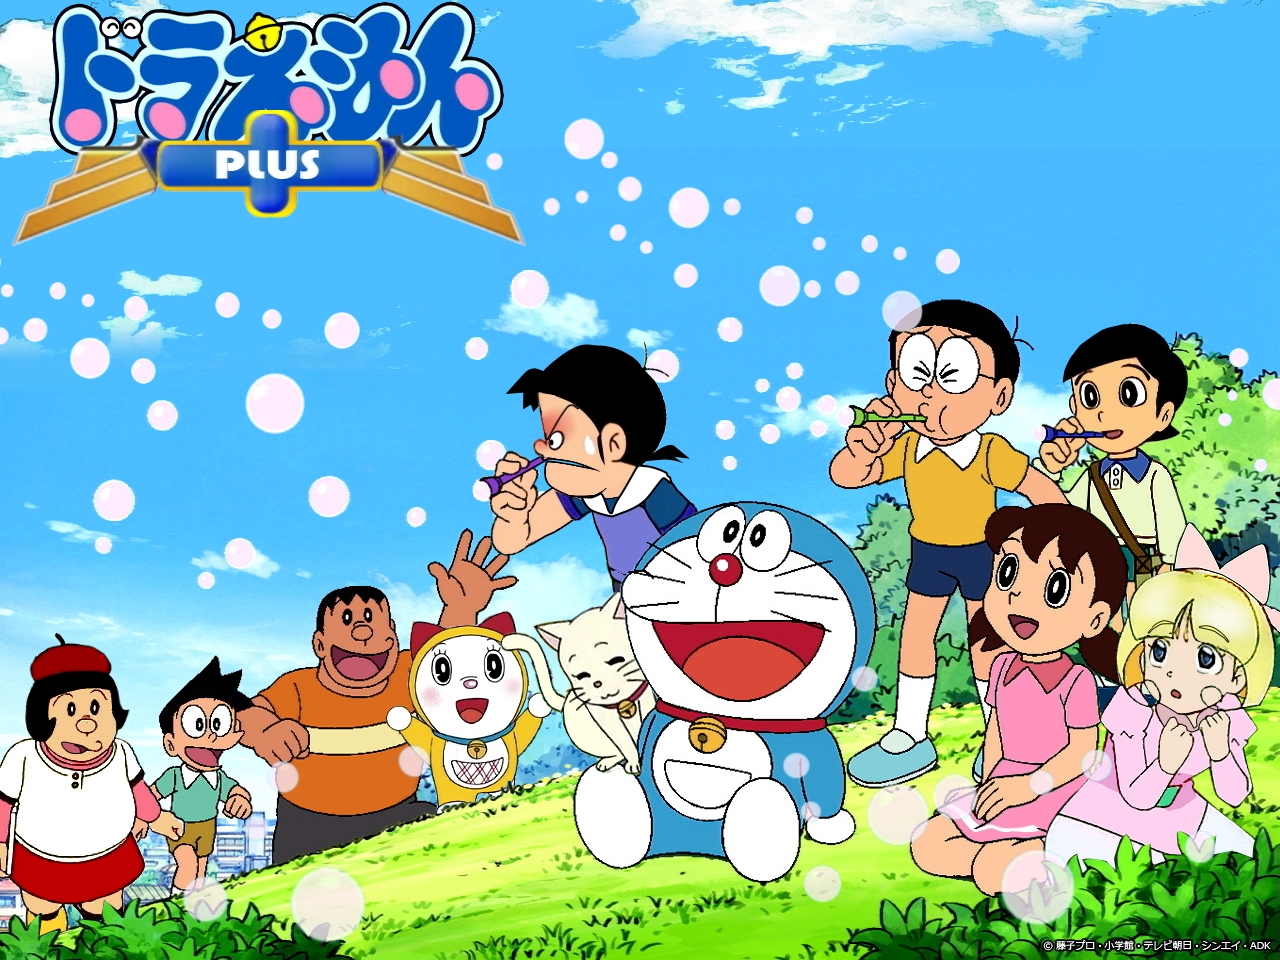 Không có gì tuyệt vời hơn khi bạn sở hữu những hình ảnh Doraemon sống động và đáng yêu đúng không nào? Hãy tươi cười và thư giãn với những hình ảnh Doraemon từ các tác giả nổi tiếng, các dự án phim ảnh hay những trang truyện tranh nổi tiếng để cảm nhận khoảnh khắc vui vẻ.